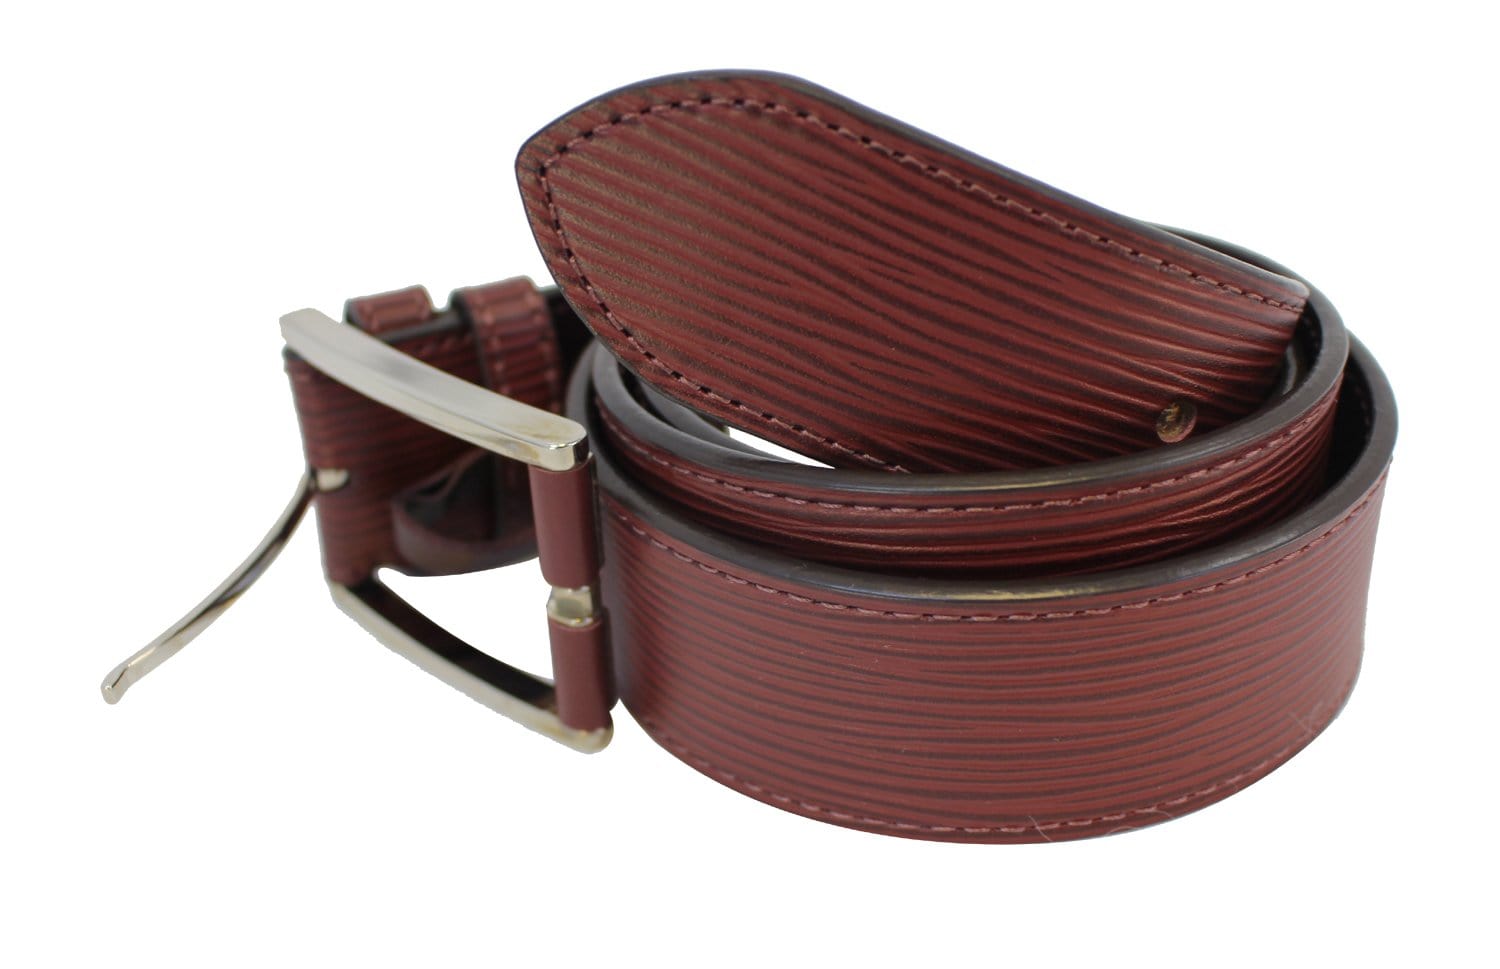 Louis Vuitton Epi Leather Belt.  Cheap louis vuitton handbags